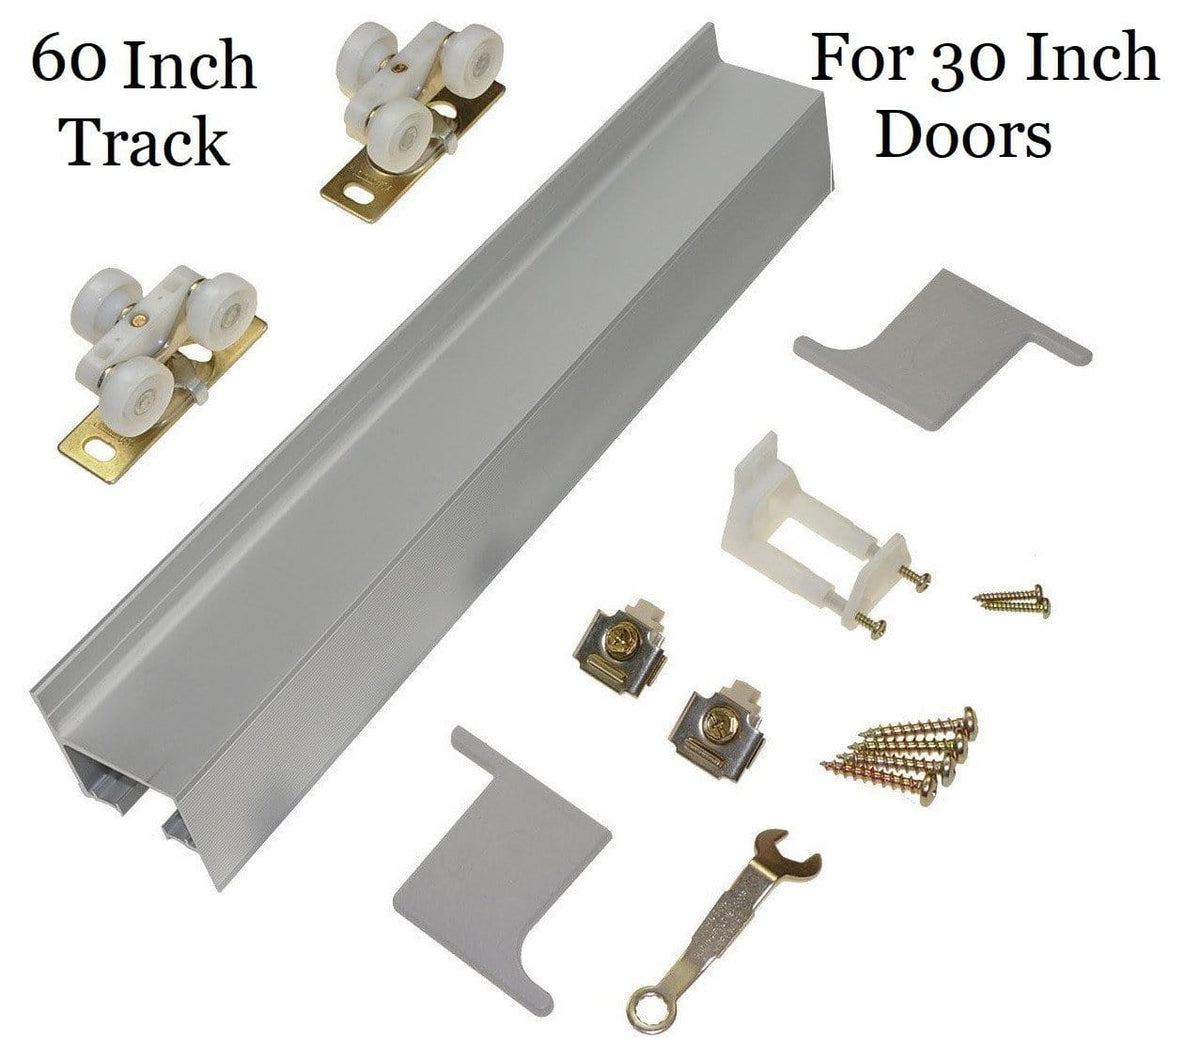 Barn Door Hardware - Modern Aluminum - 60 Inch Track For 30 Inch Doors